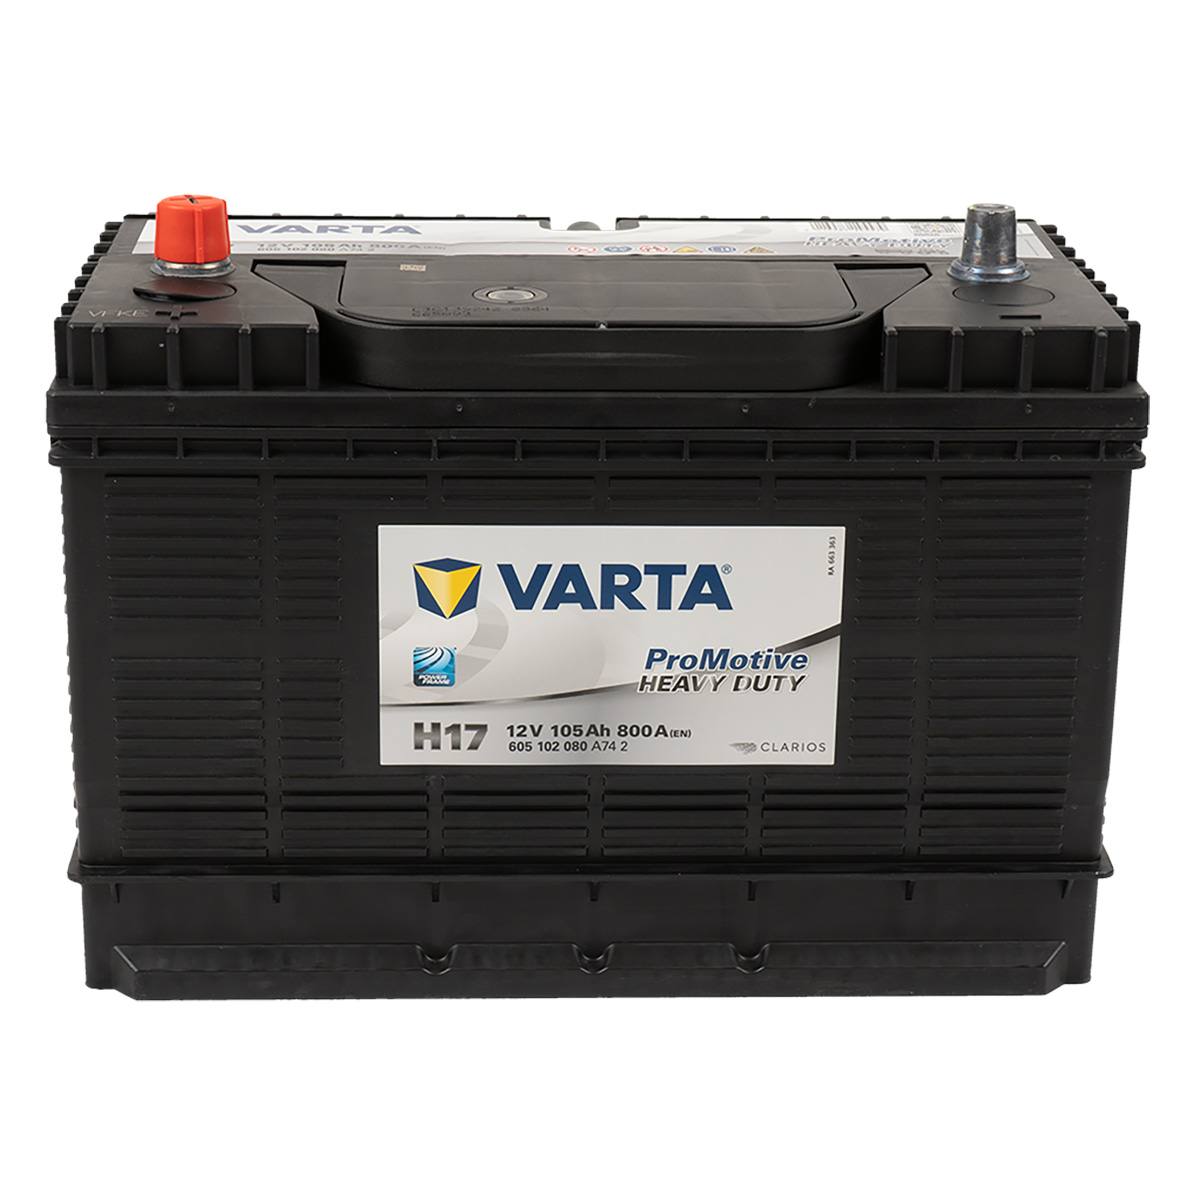 Varta H17 ProMotive Heavy Duty 105Ah 800A LKW Batterie